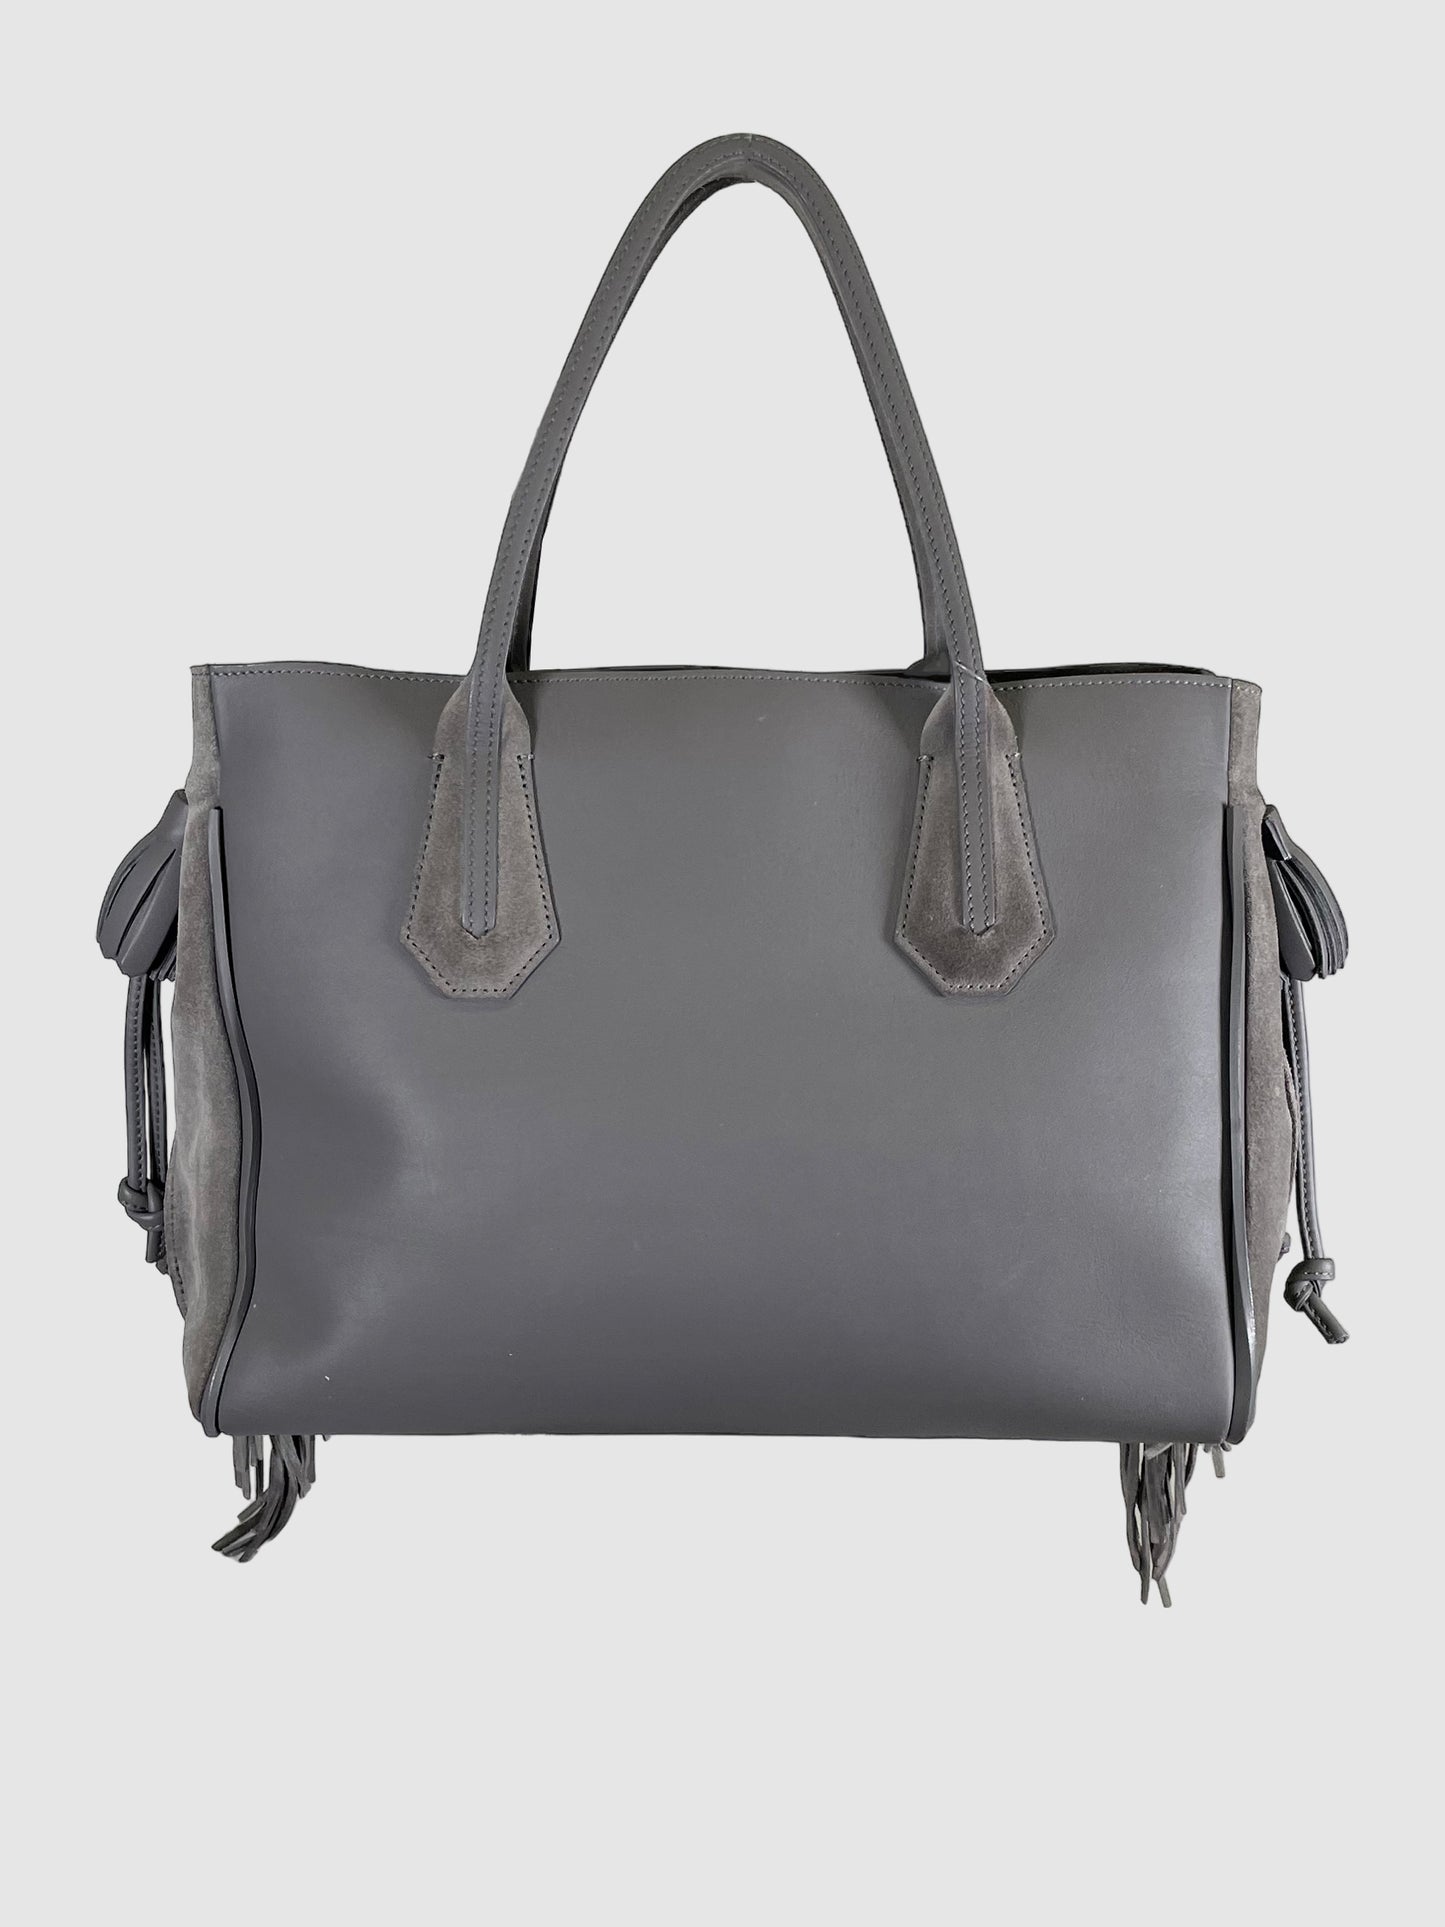 Longchamp Penelope Tote Bag